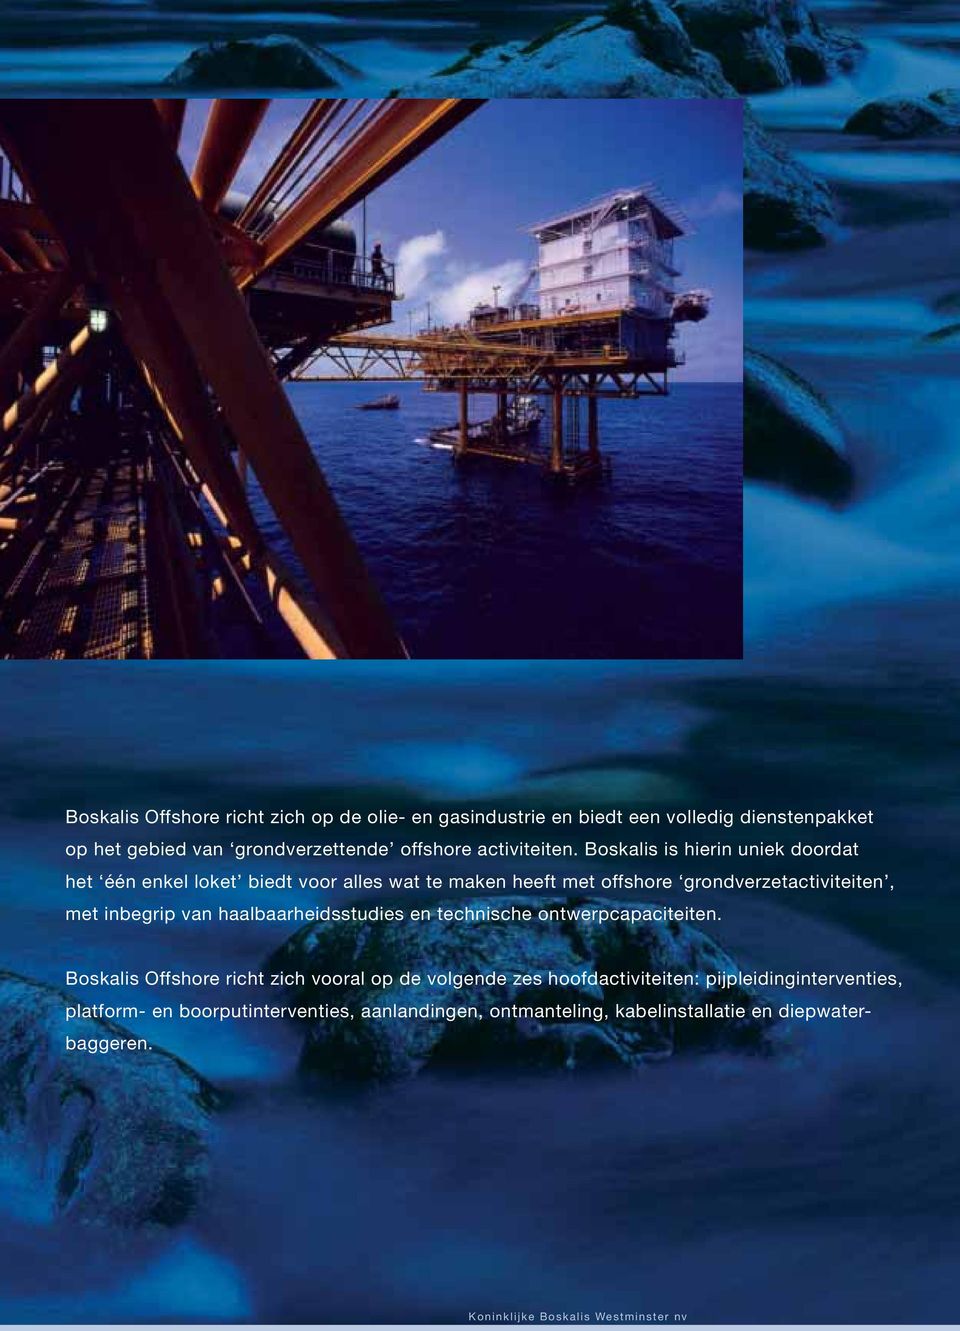 Boskalis is hierin uniek doordat het één enkel loket biedt voor alles wat te maken heeft met offshore grondverzetactiviteiten, met inbegrip van